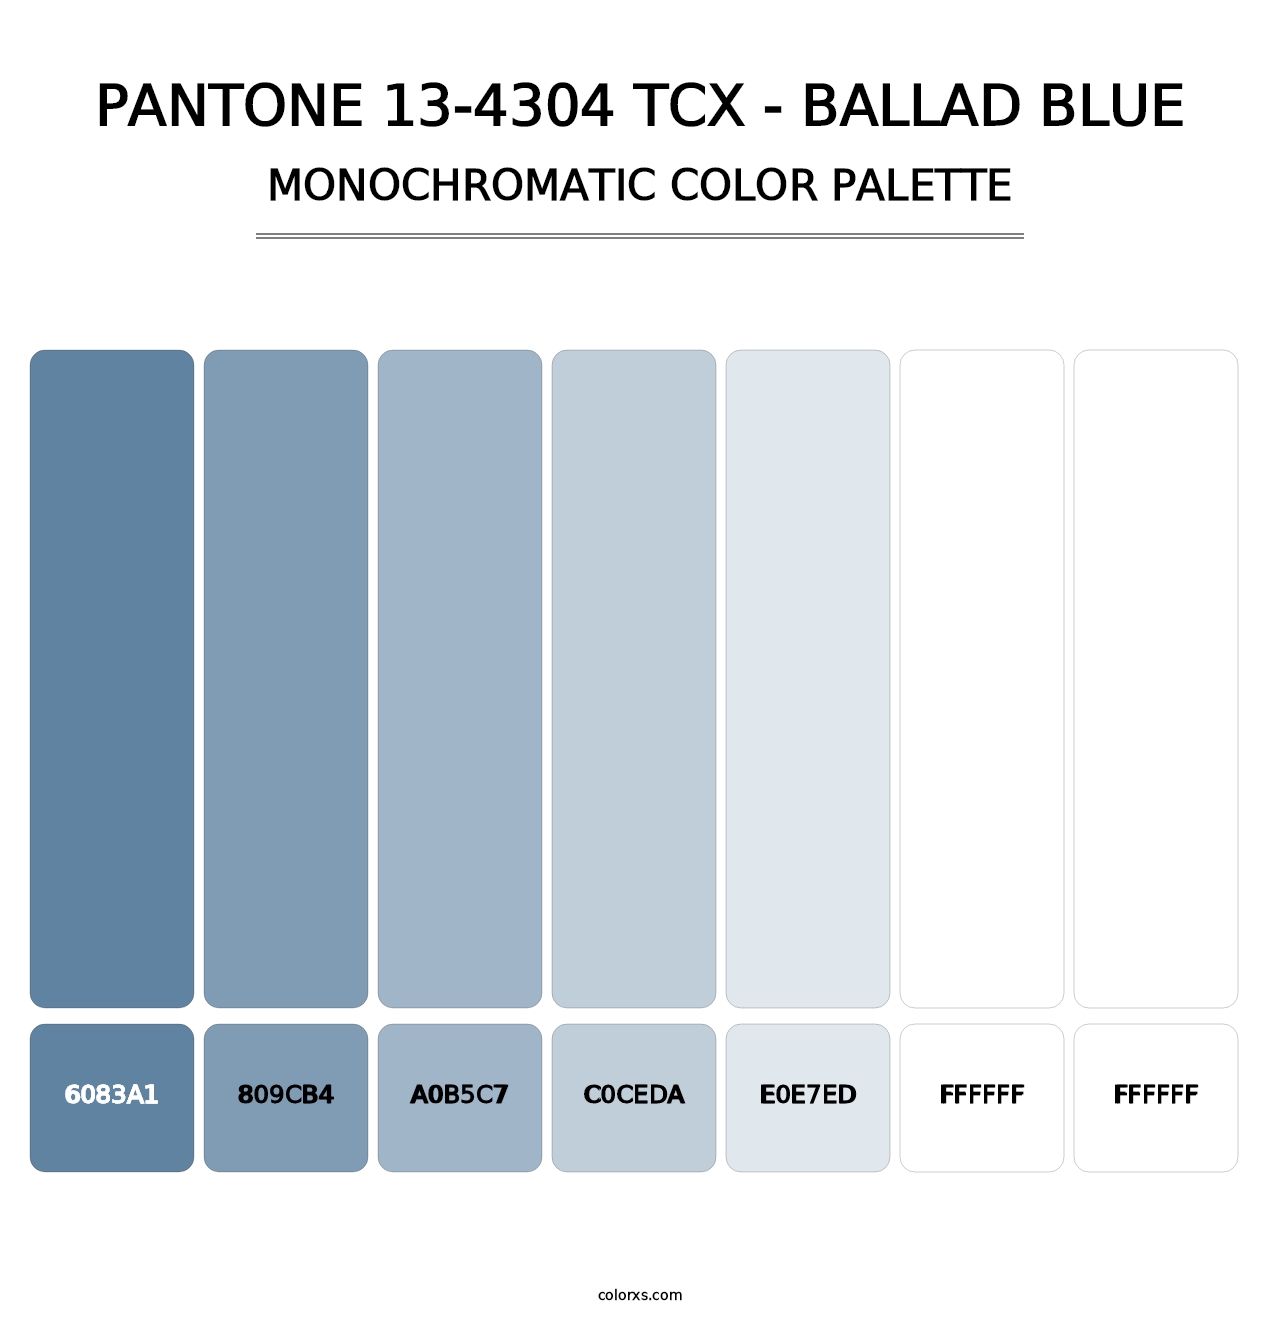 PANTONE 13-4304 TCX - Ballad Blue - Monochromatic Color Palette